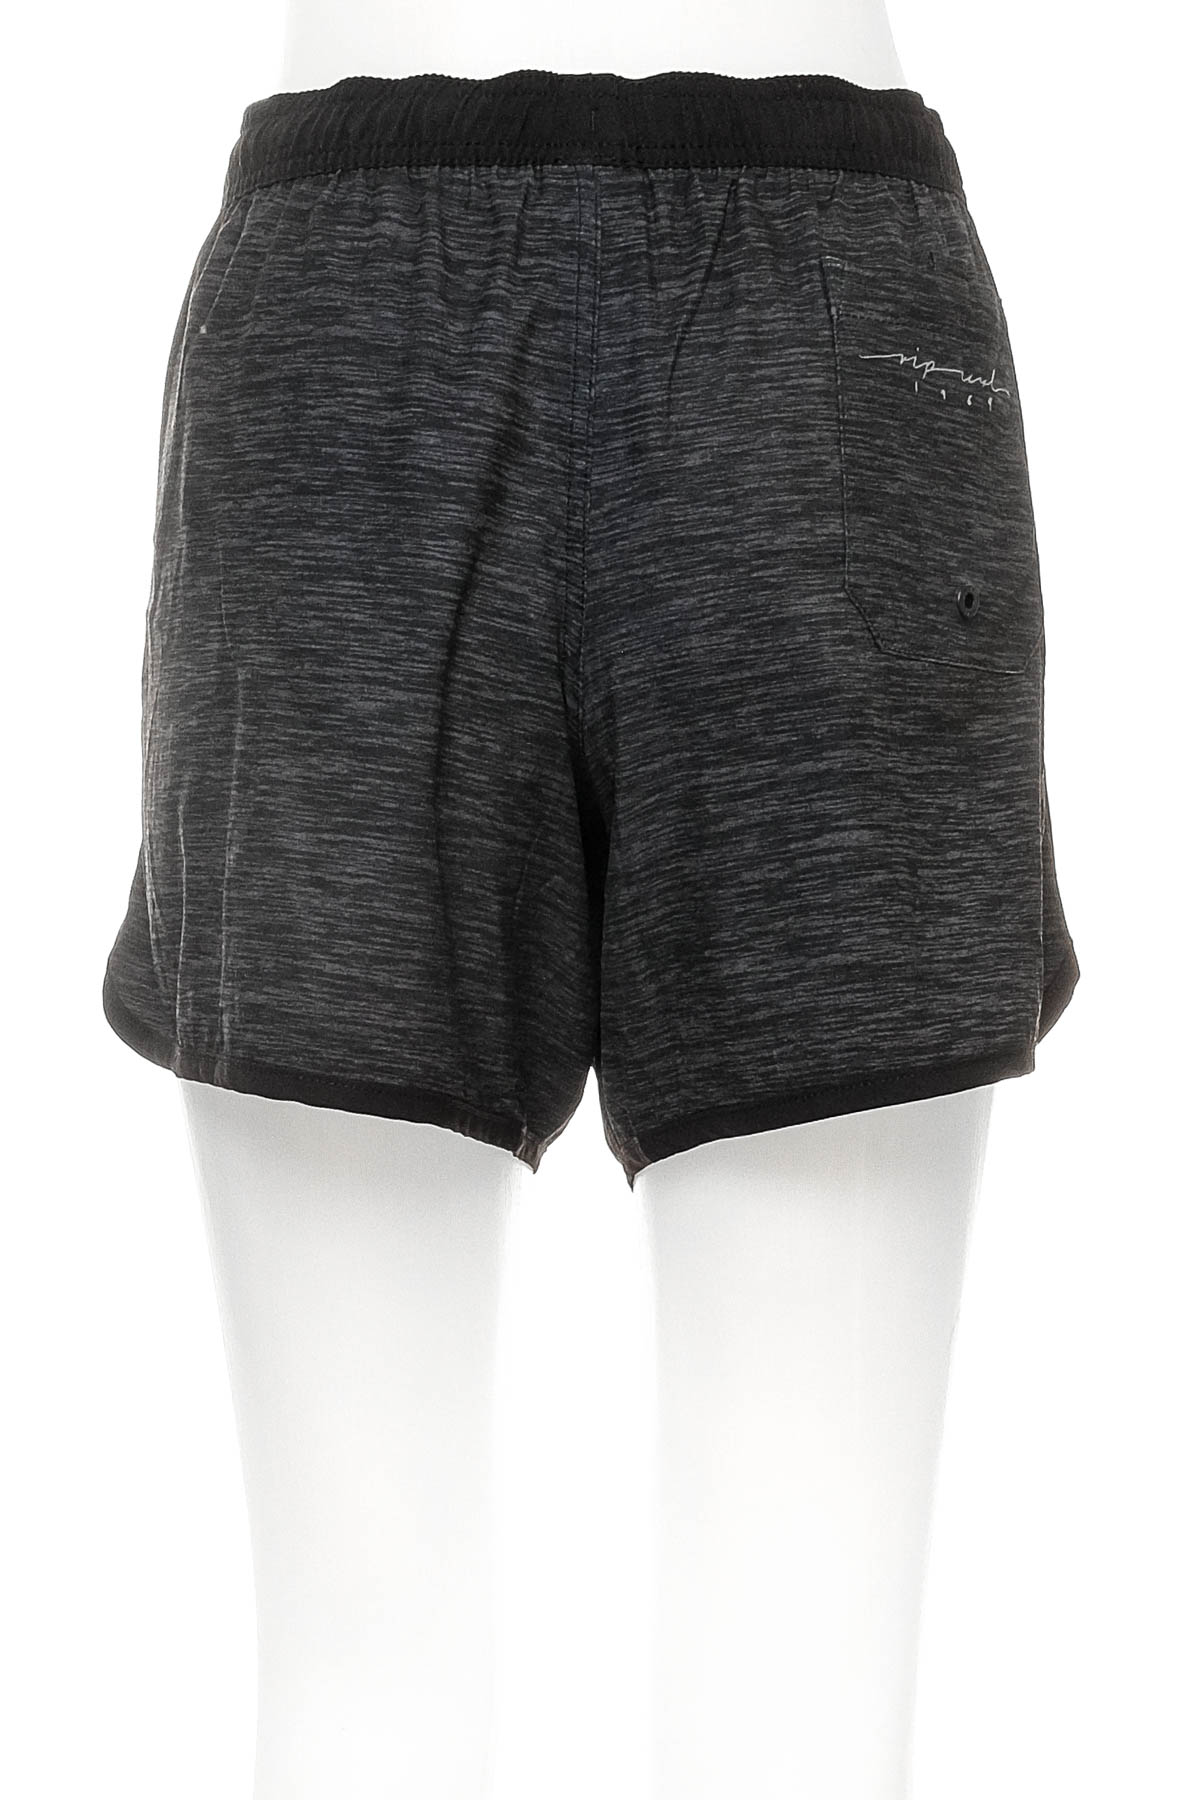 Women's shorts - RIPCURL - 1